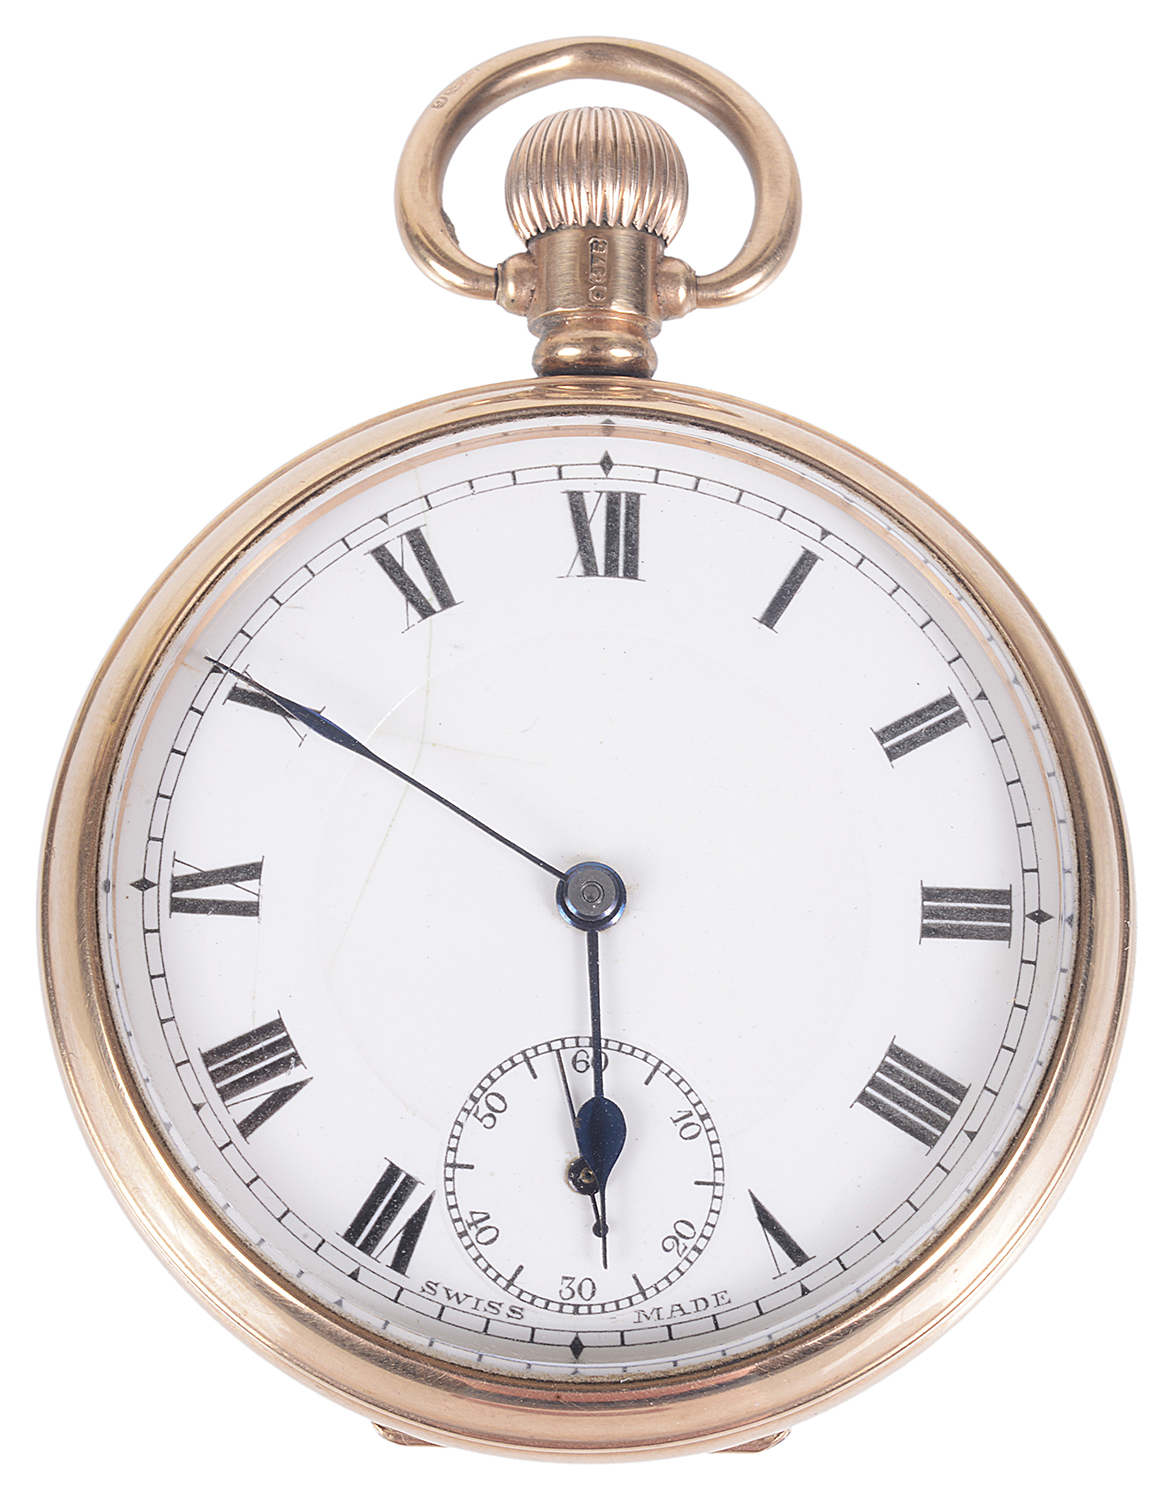 A 9ct rose gold open faced pocket watch; Albert watch chain